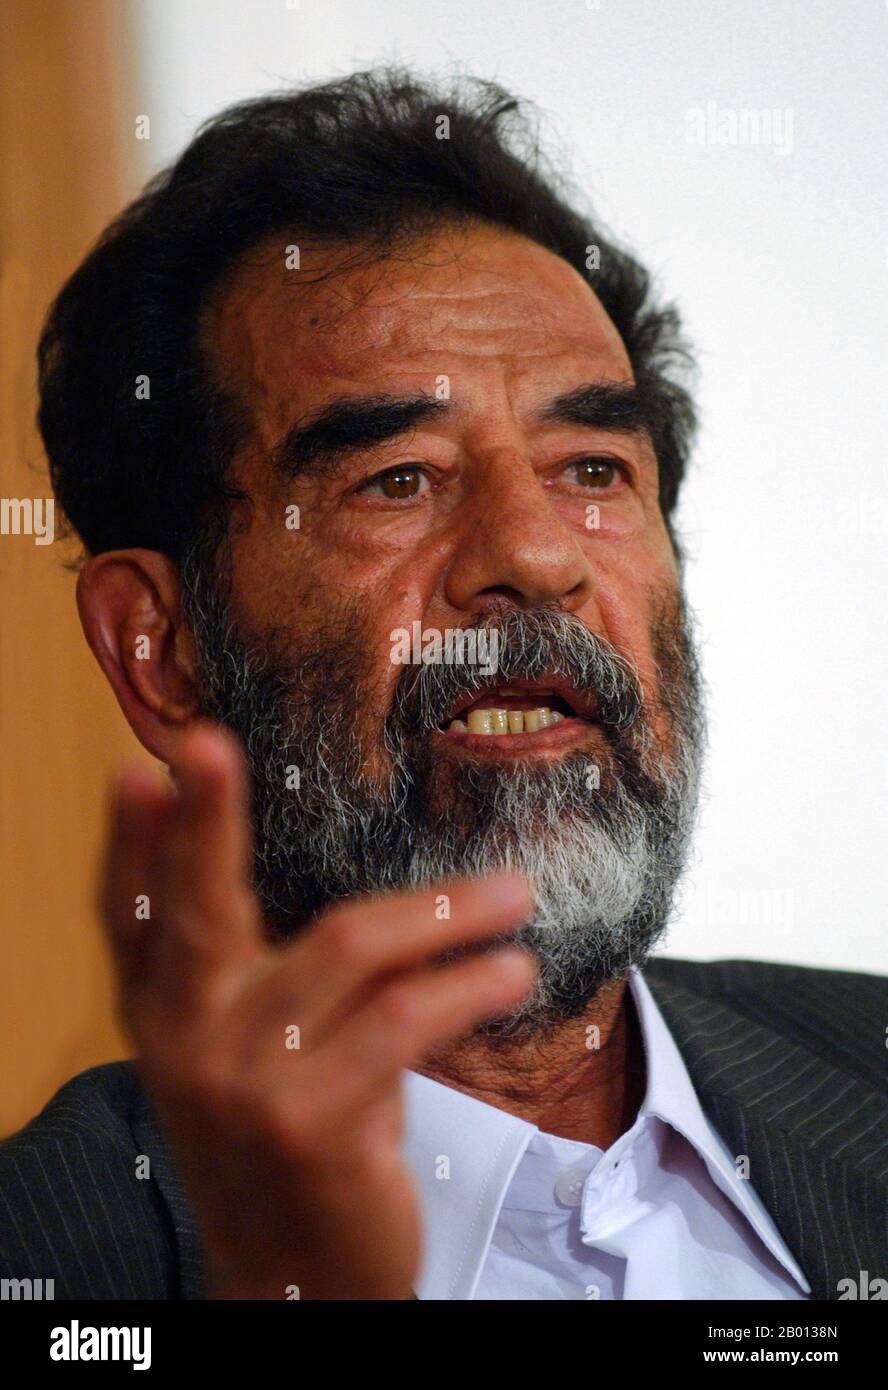 Irak: Saddam Hussein, Präsident des Irak (r. 1979-2003), während seines Prozesses am 1. Juli 2004. Saddam Hussein Abd al-Majid al-Tikriti (28. April 1937 – 30. Dezember 2006) war Präsident des Irak. Als führendes Mitglied der revolutionären Baath-Partei, die eine Mischung aus arabischem Nationalismus und arabischem Sozialismus befürwortete, spielte Saddam eine Schlüsselrolle beim Putsch von 1968, der die Partei an die langfristige Macht brachte. Als Präsident behielt Saddam die Macht während des Iran-Irak-Krieges von 1980 bis 1988 und während des Persischen Golfkrieges von 1991 aufrecht. Er wurde 2003 von den USA abgesetzt und am 30. Dezember 2006 hingerichtet. Stockfoto